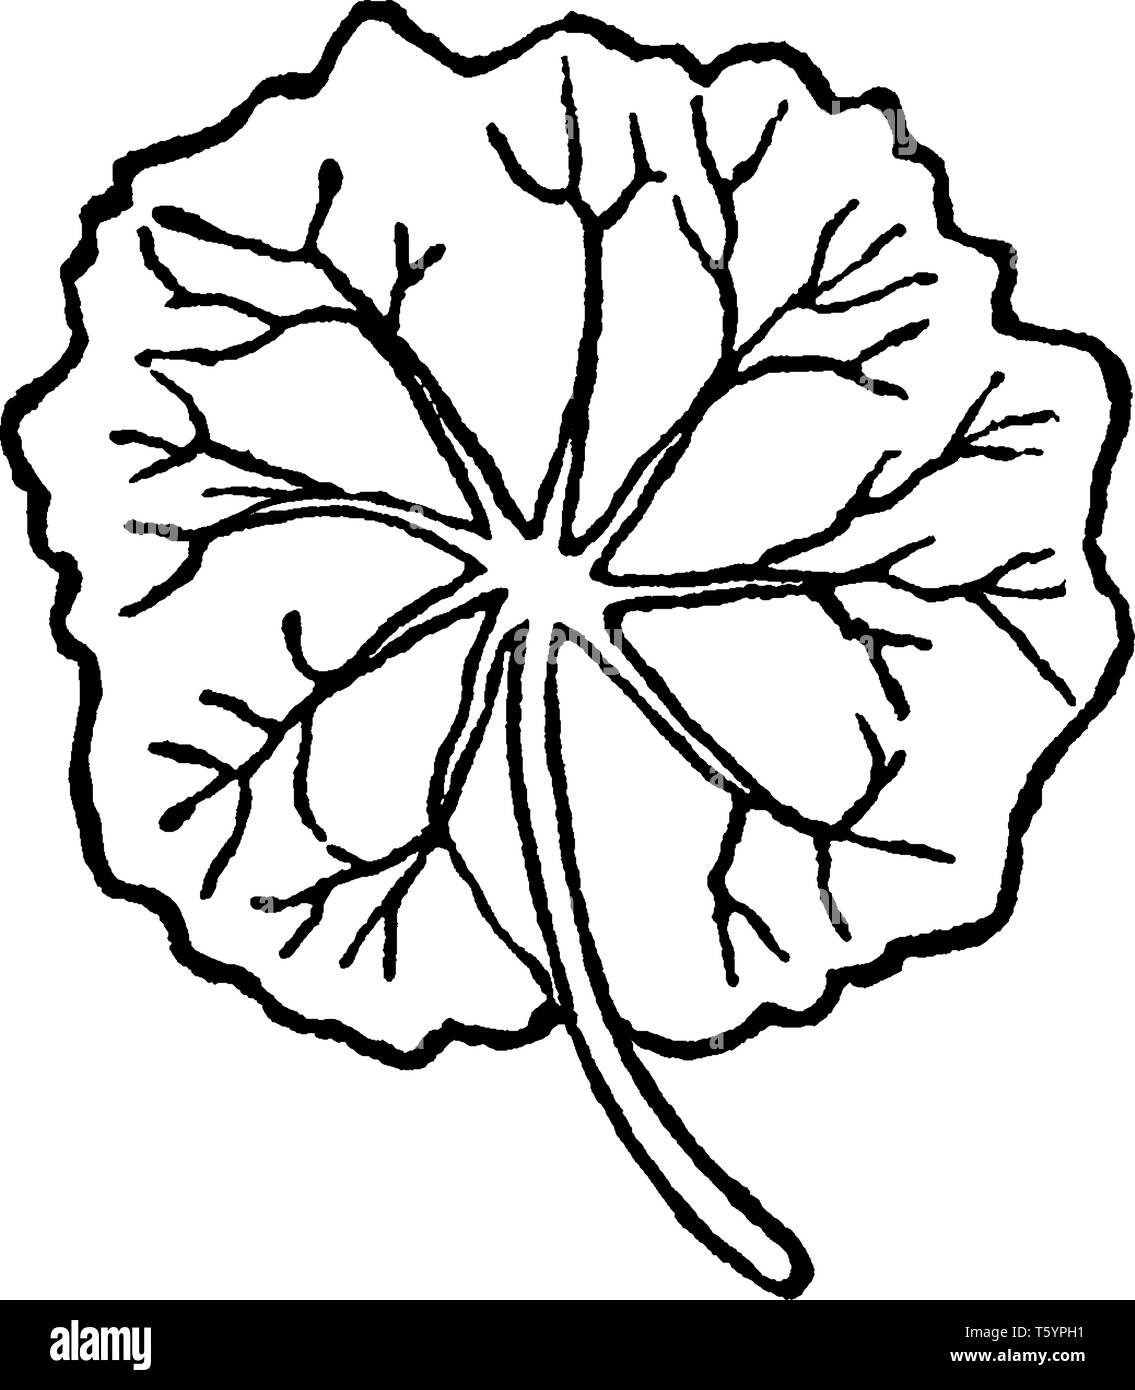 La Foglia Orbicular sono petiolated, circolare. Le vene andate centralmente dalla base della foglia, vintage disegno della linea di incisione o illustrazione. Illustrazione Vettoriale